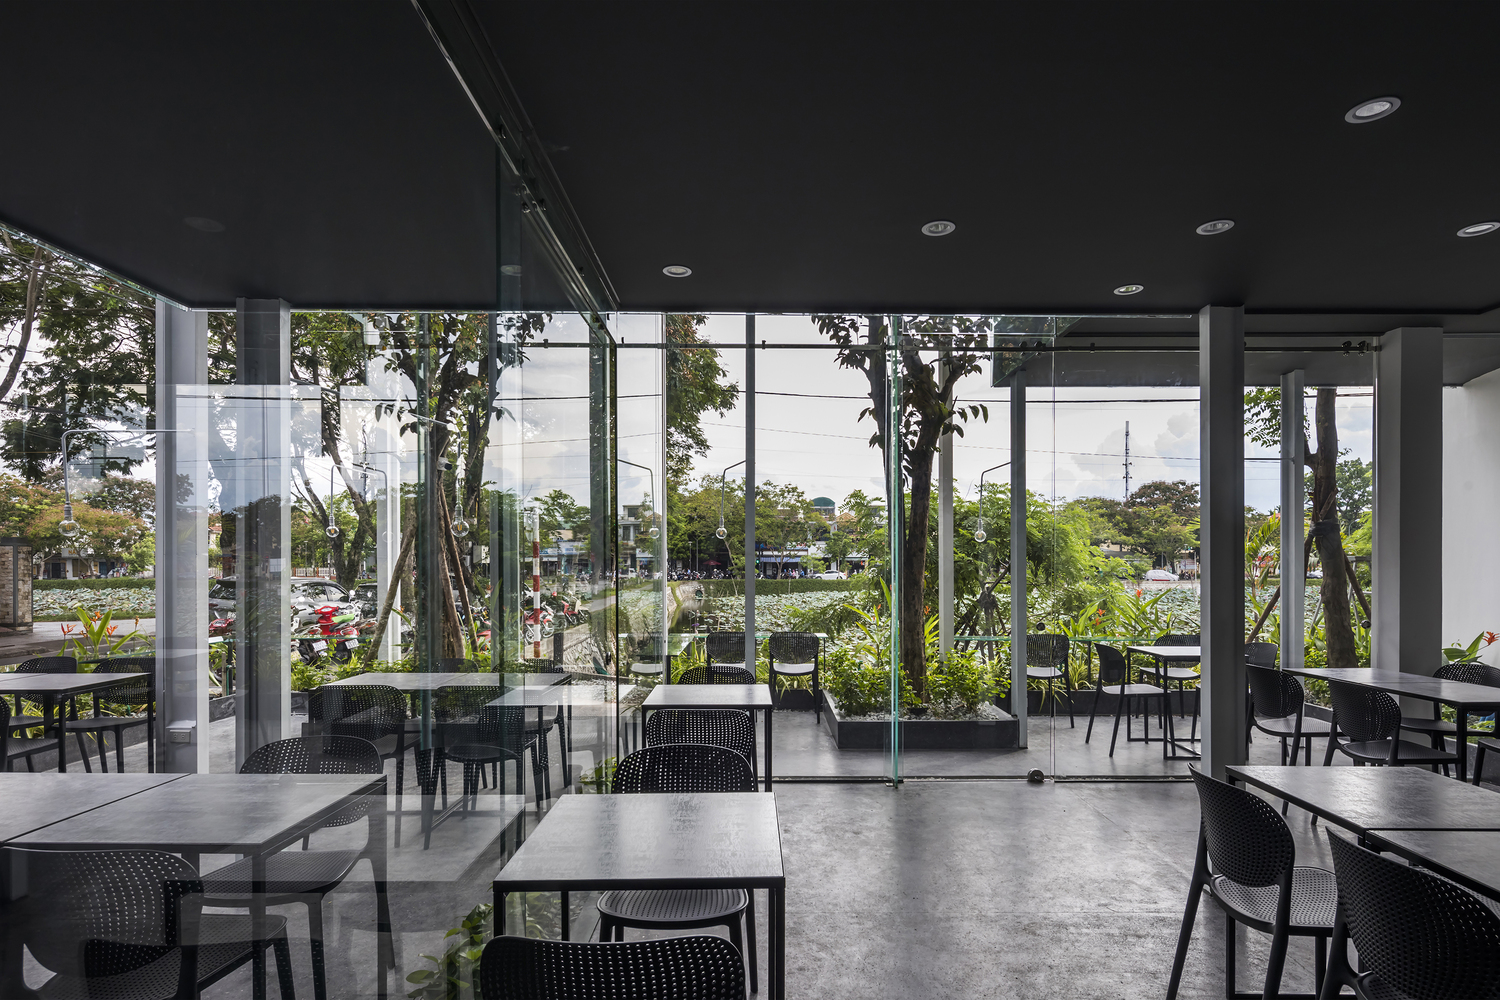 không gian bên trong quán cà phê độc đáo với tường kính trong suốt hướng nhìn ra cây xanh bên ngoài